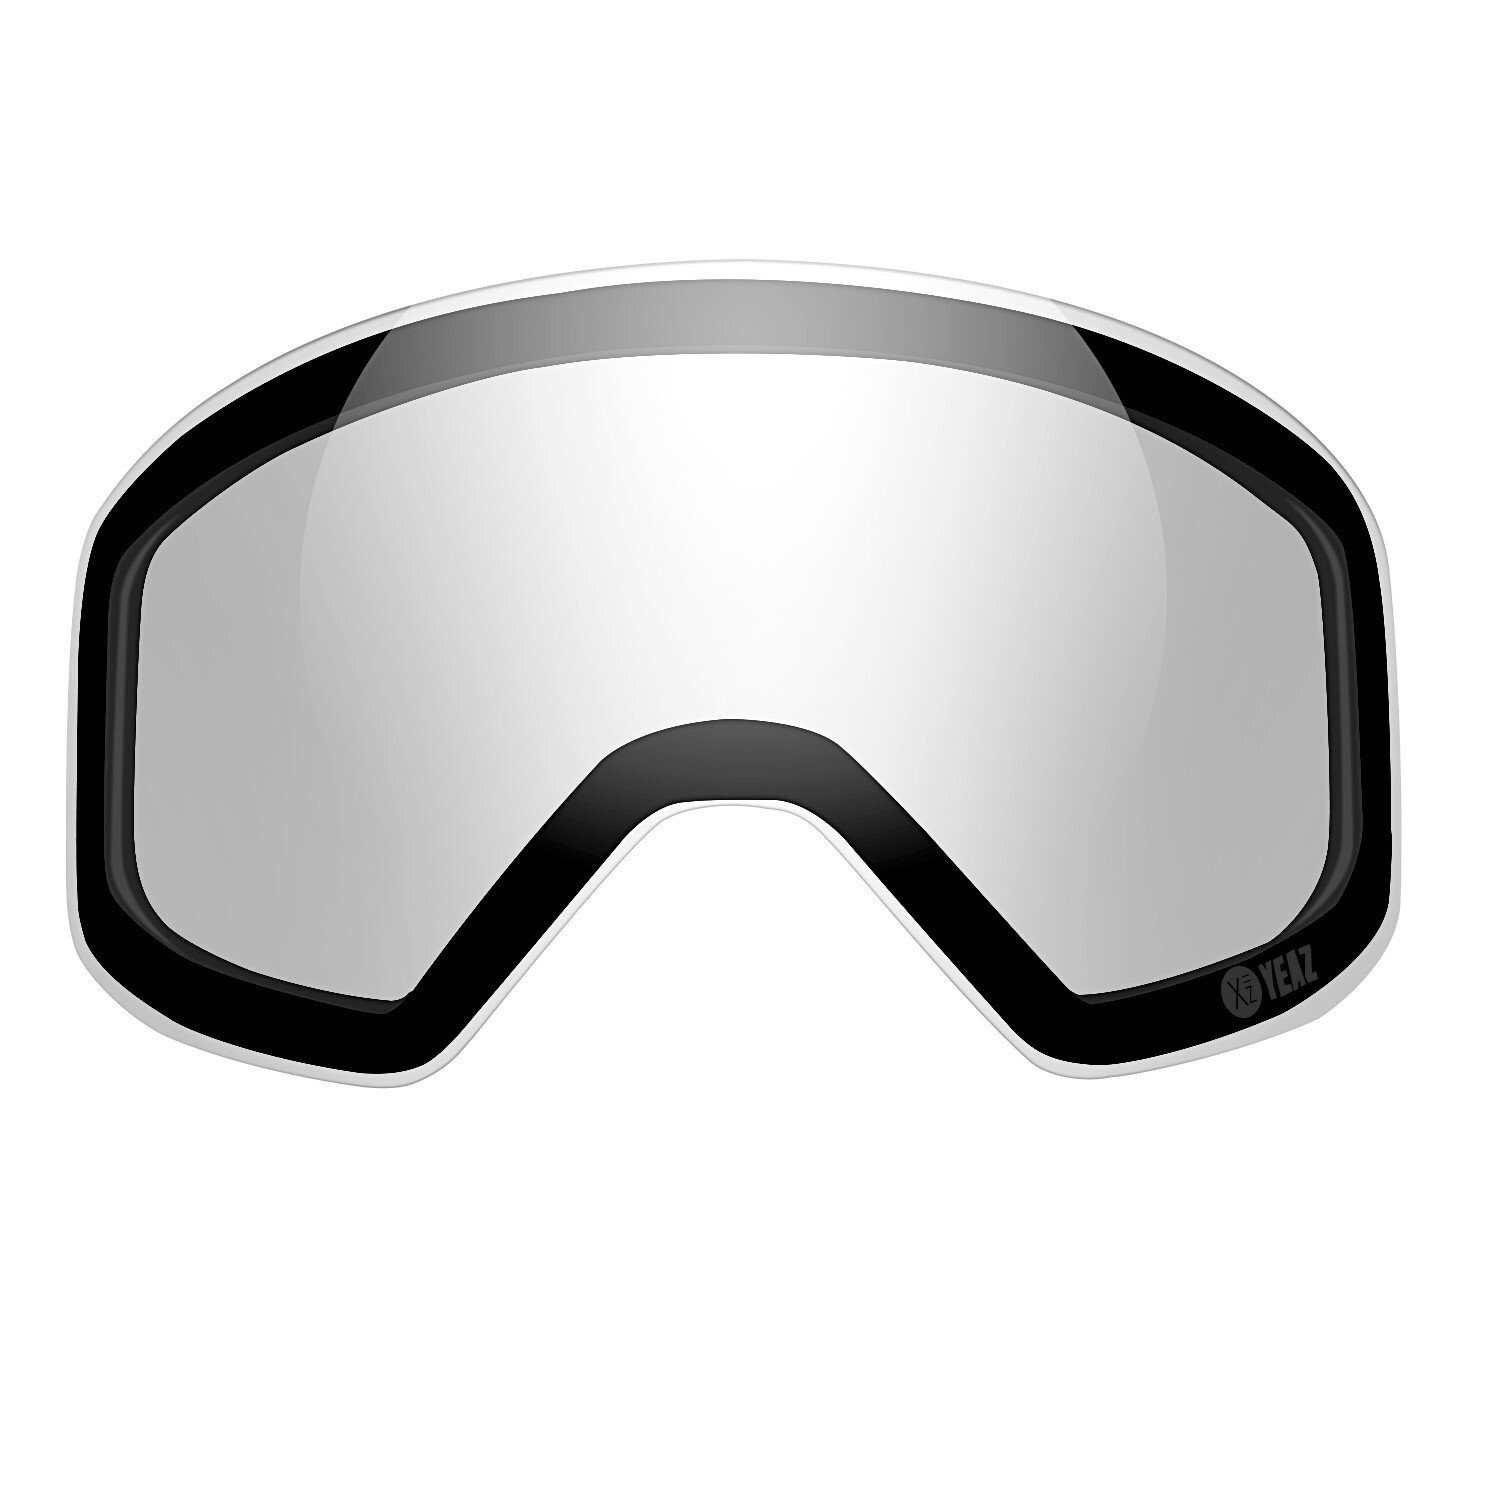 Verkaufsförderungsaktion YEAZ Skibrille APEX magnetisches Skibrille Ersatzglas Photochrome für photochrome, wechselglas APEX